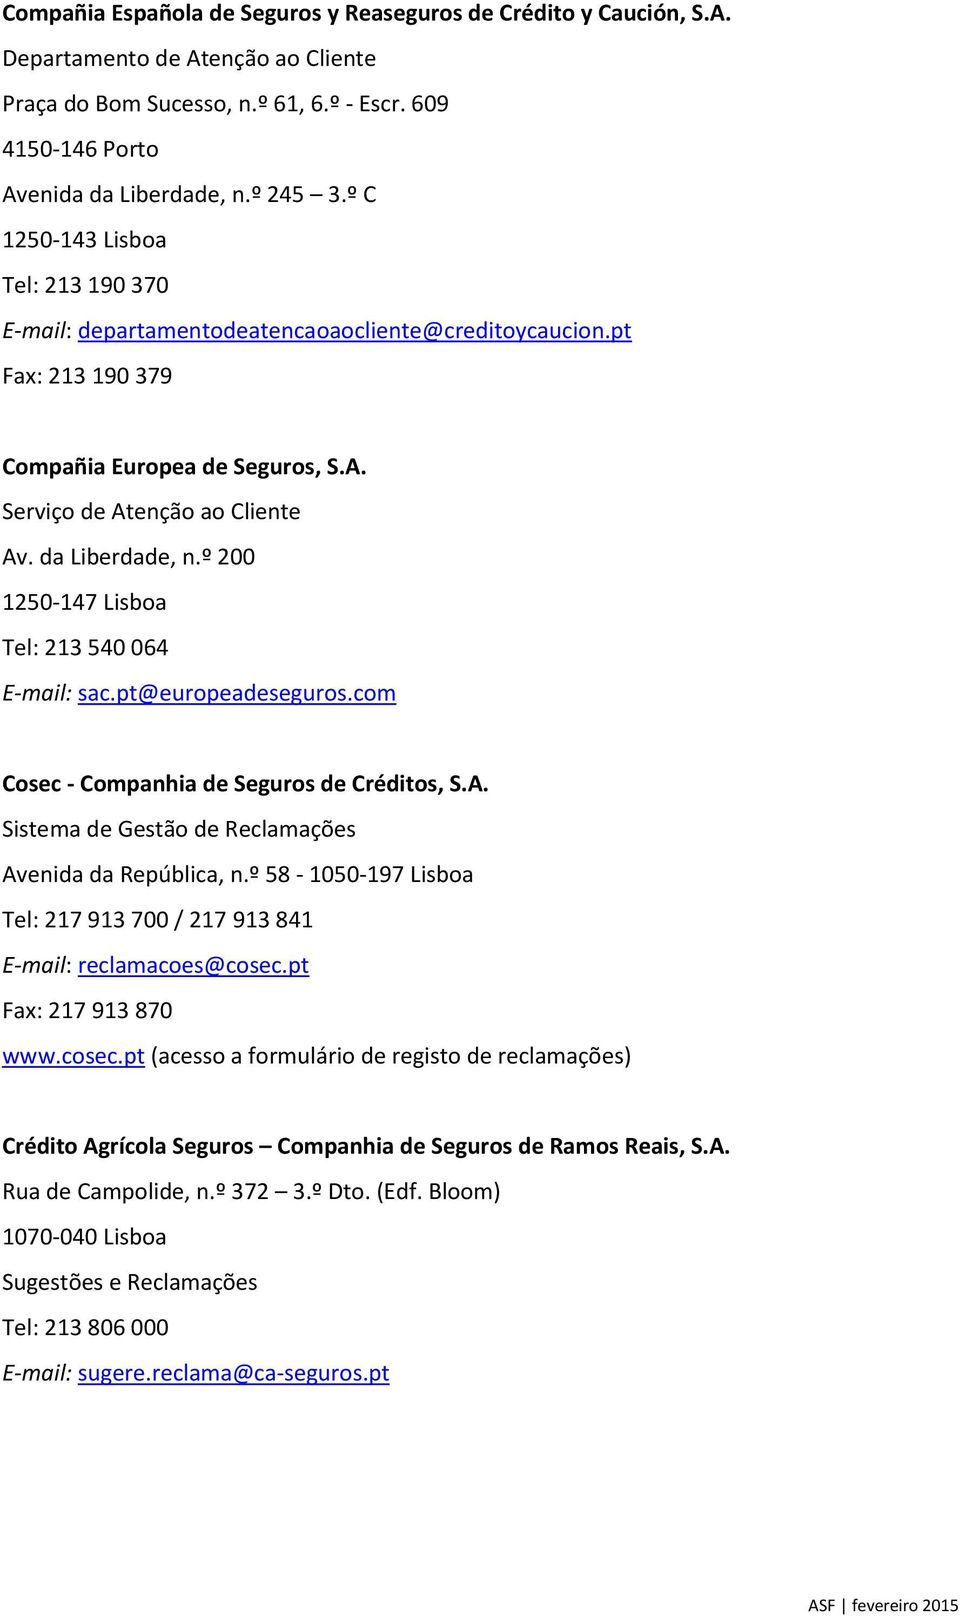 º 200 1250-147 Lisboa Tel: 213 540 064 E-mail: sac.pt@europeadeseguros.com Cosec - Companhia de Seguros de Créditos, S.A. Sistema de Avenida da República, n.